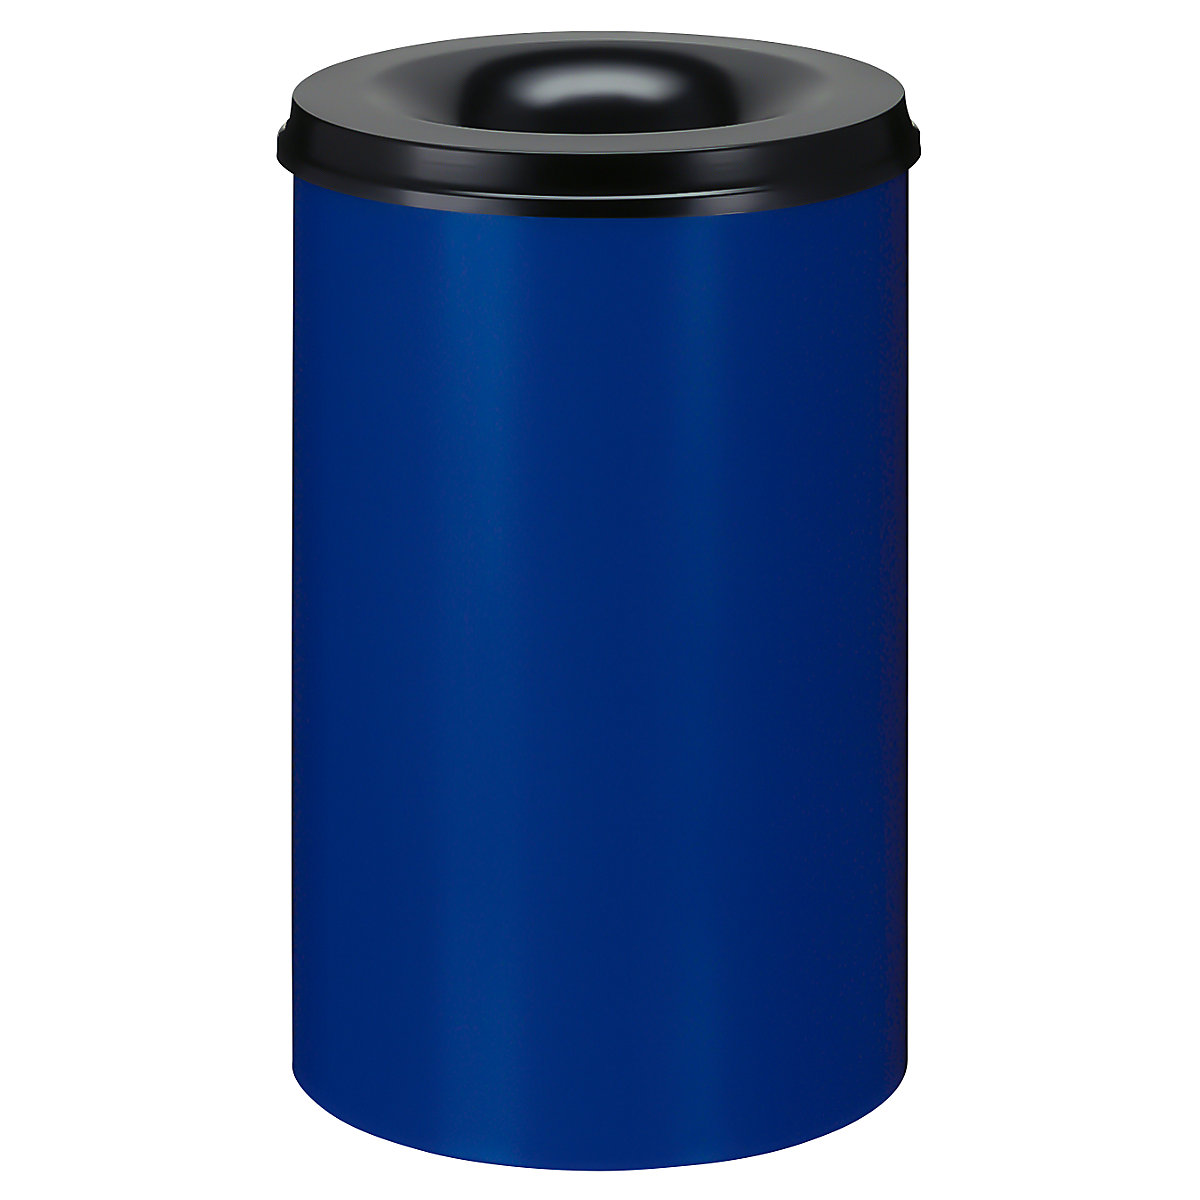 Önoltó papírkosár, űrtartalom 110 l, ma x Ø 720 x 470 mm, ház kék / oltófedél fekete színben